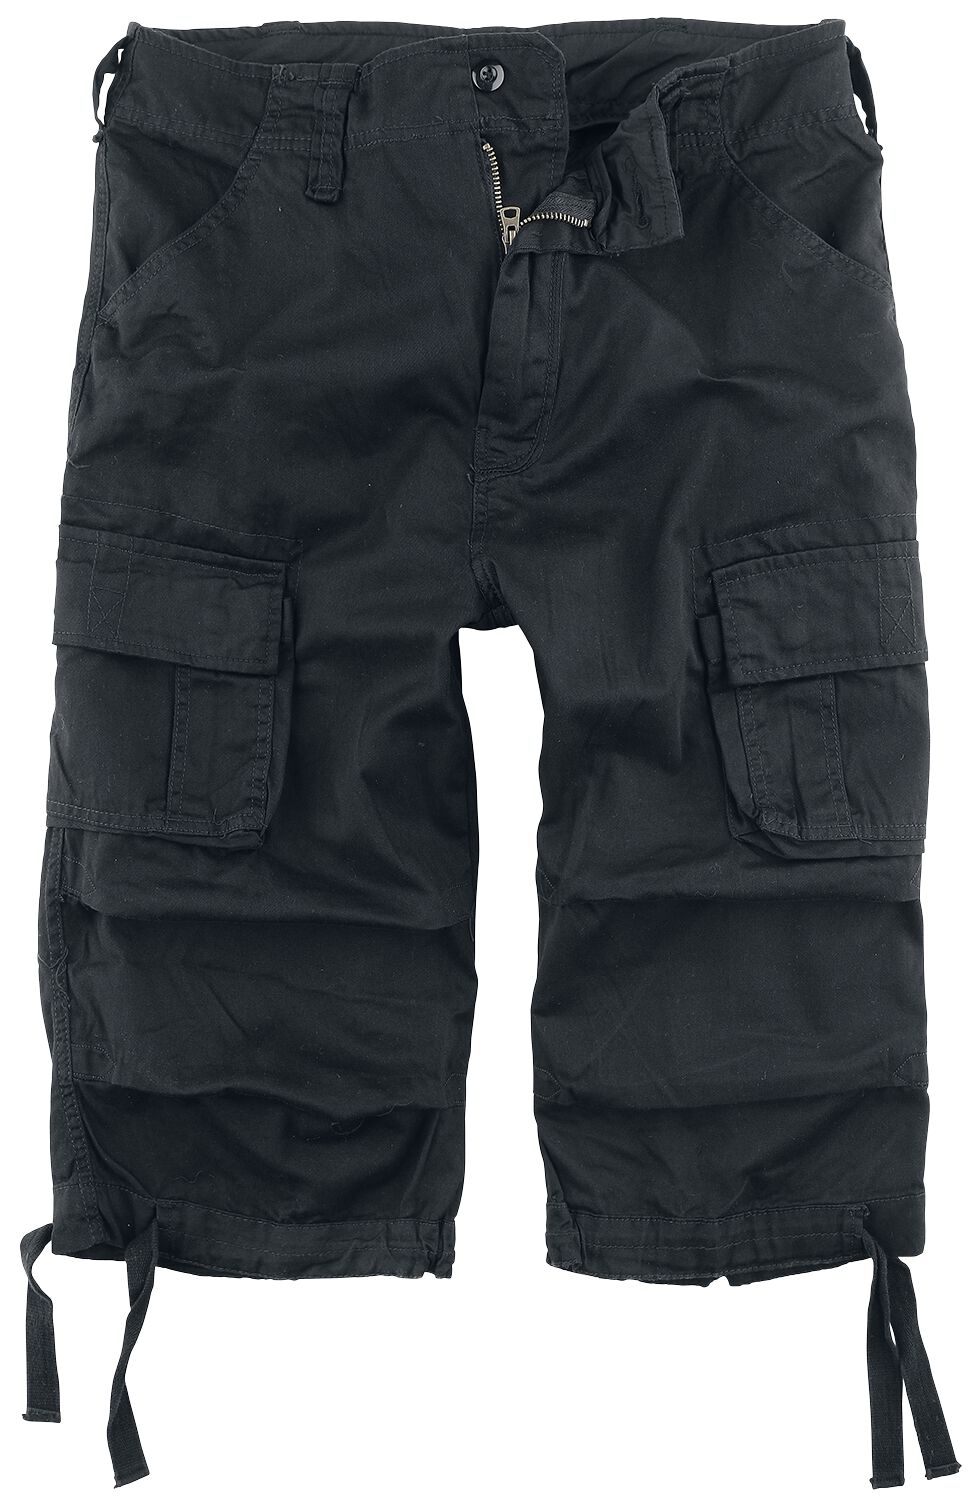 Brandit Urban Legend 3/4 Shorts Short schwarz in M